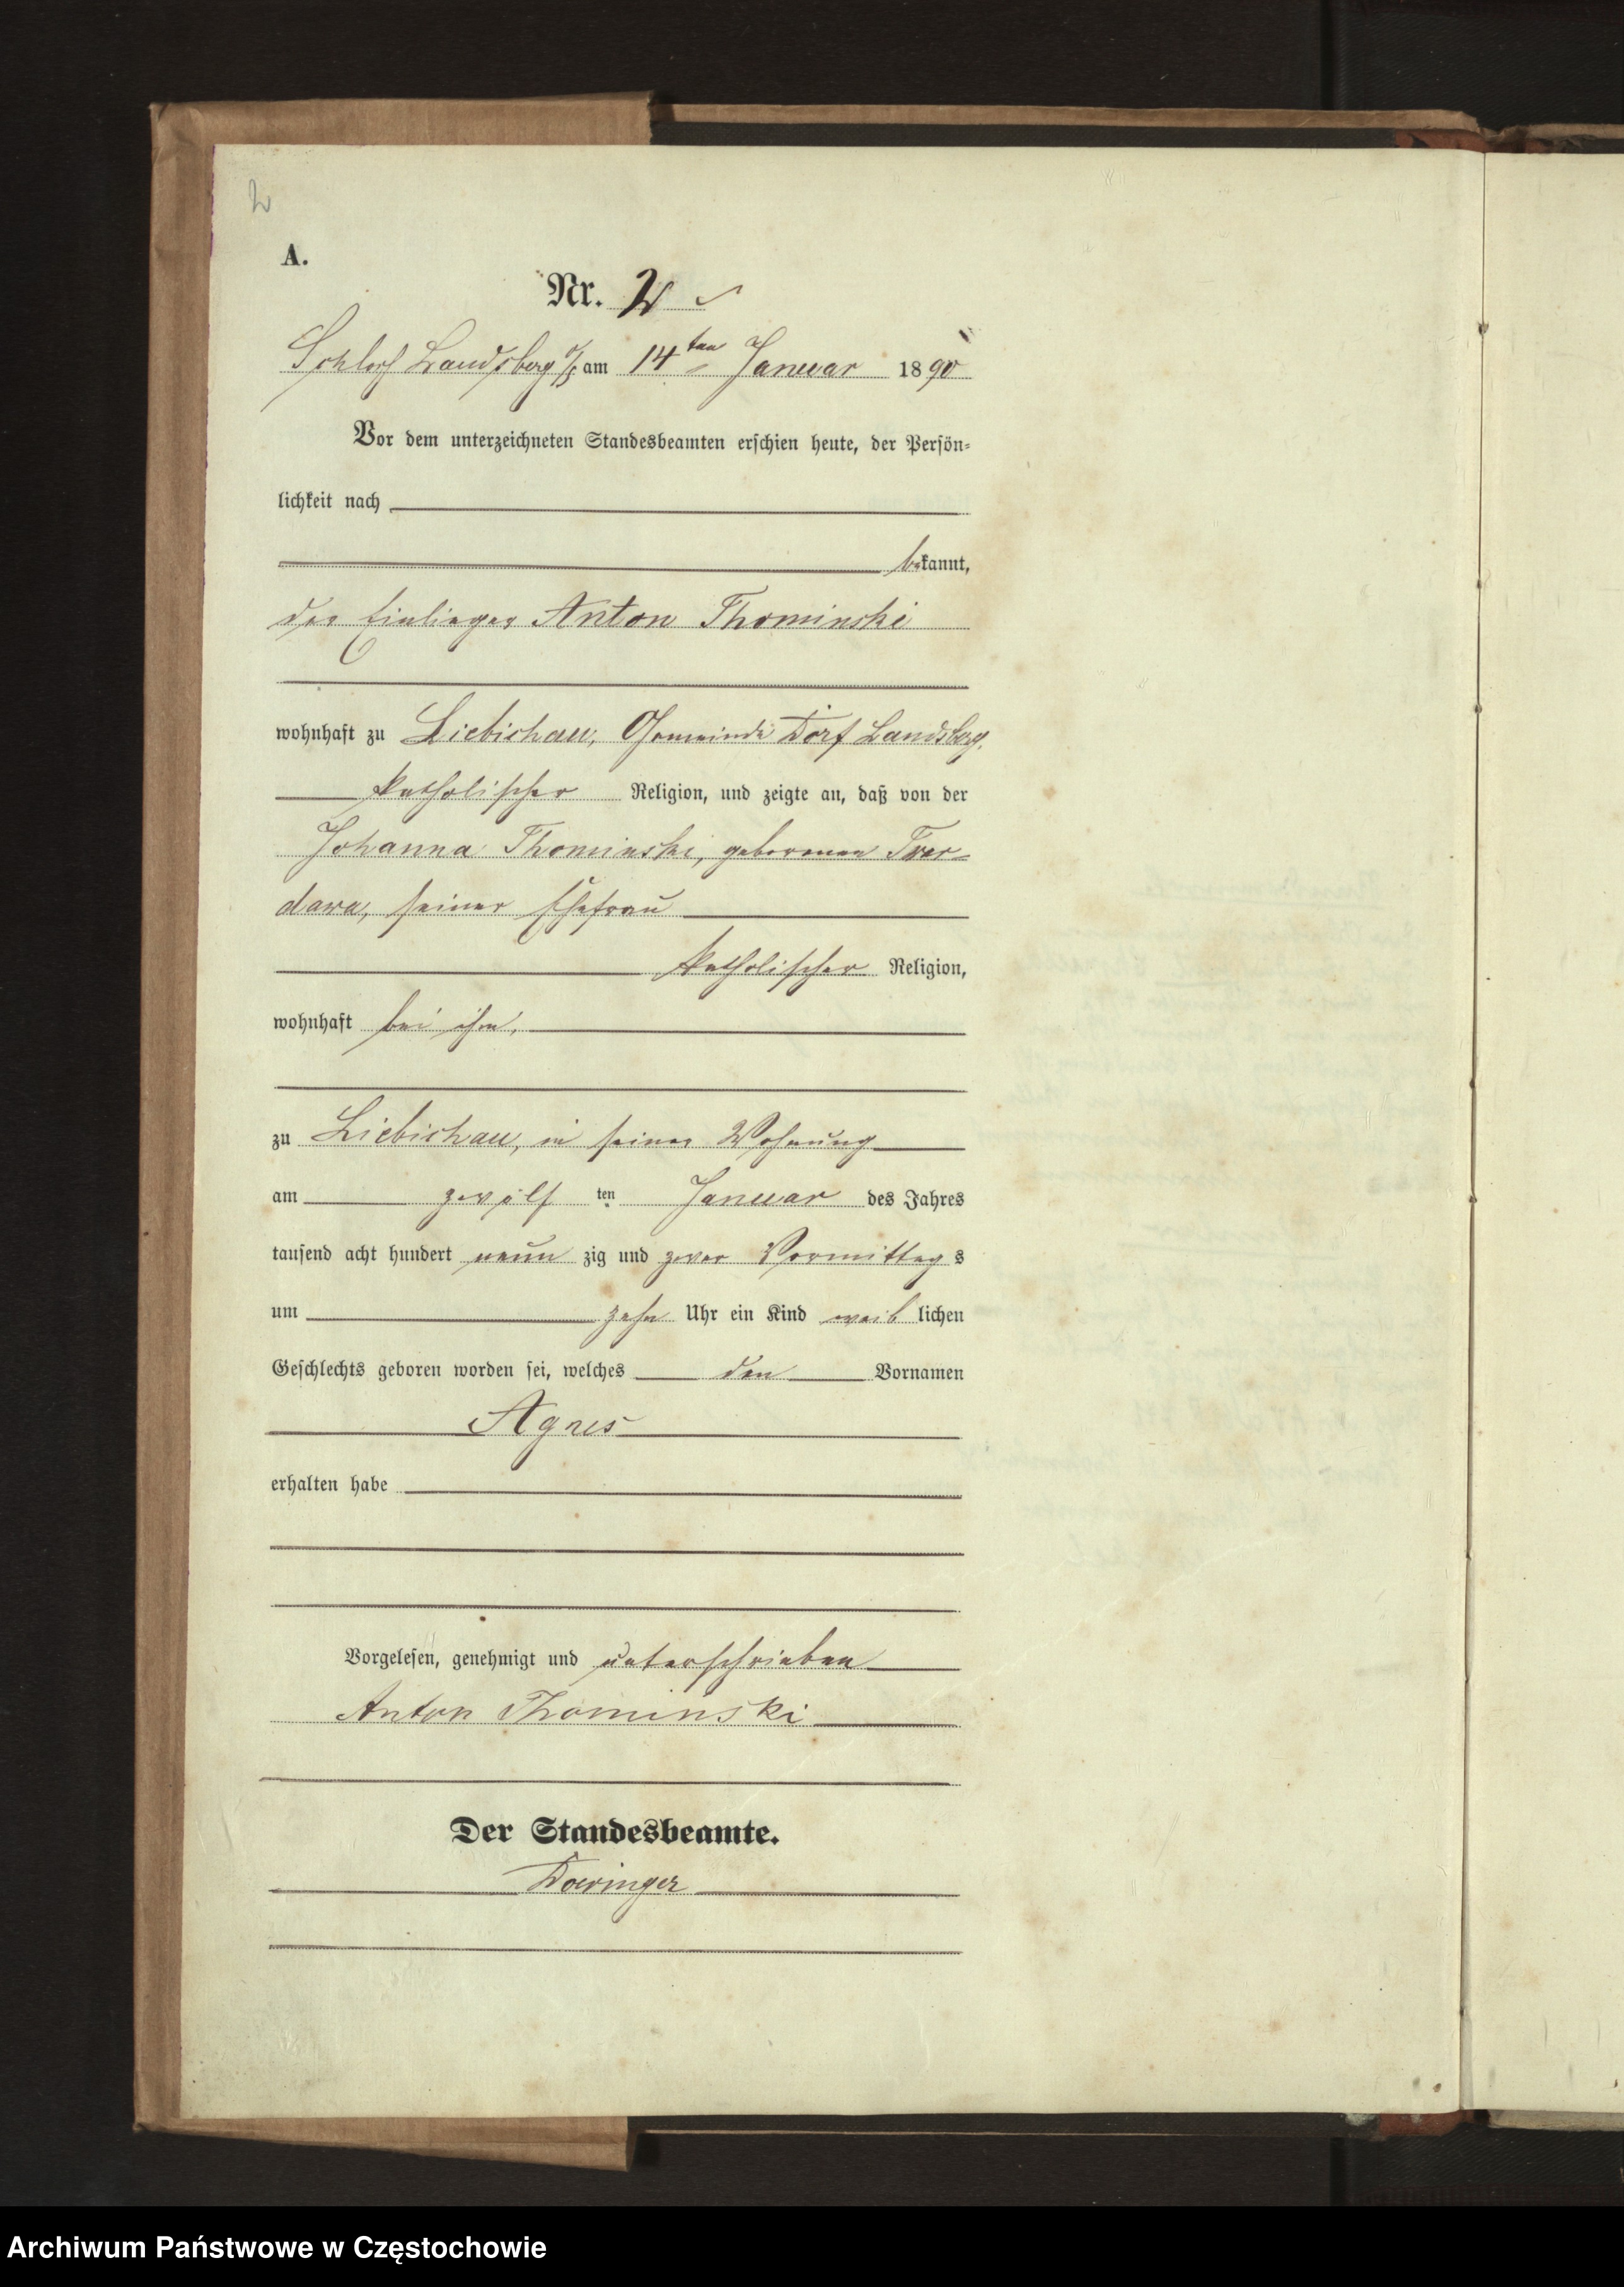 Skan z jednostki: Geburts - Haupt - Register des Koniglich Preussiechen Standesamts Wienskowitz  im Kreise Rosenberg o/ S. pro 1890.